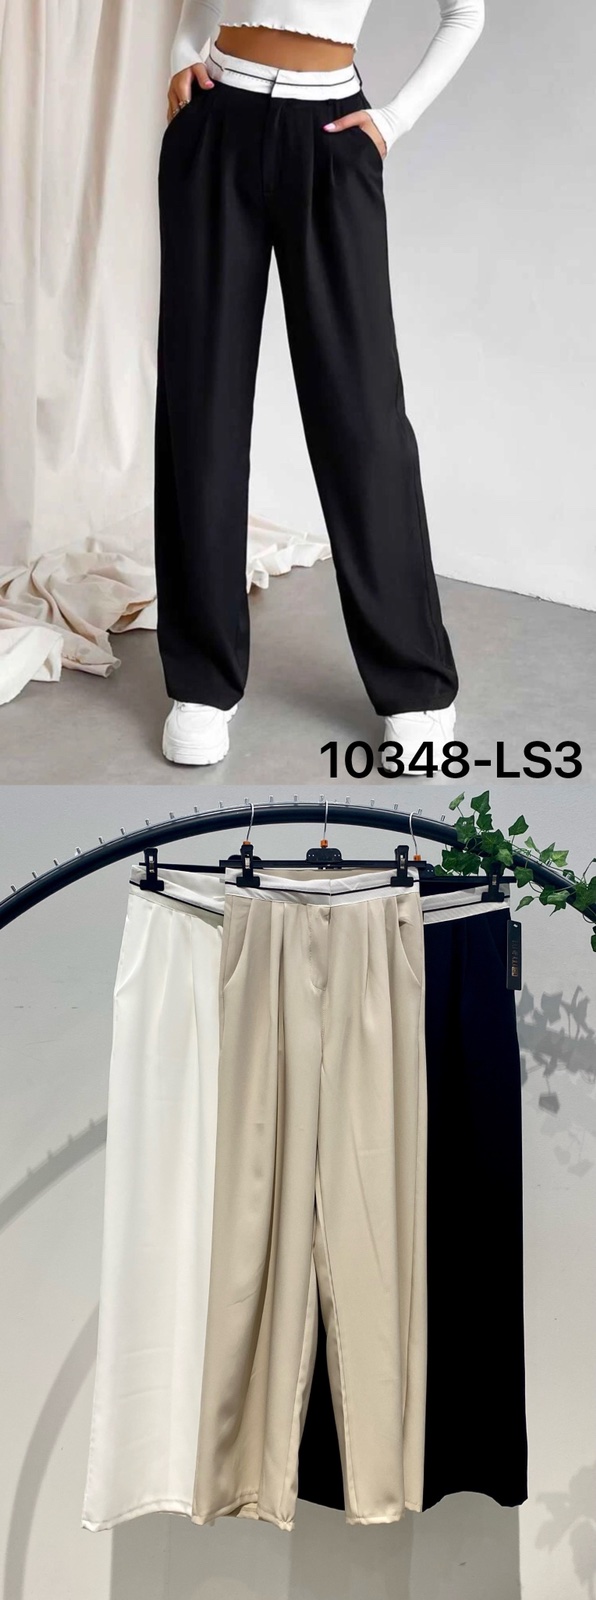 Spodnie  damska (Włoskie produkt) Roz SM.1 kolor Paczka 2 szt